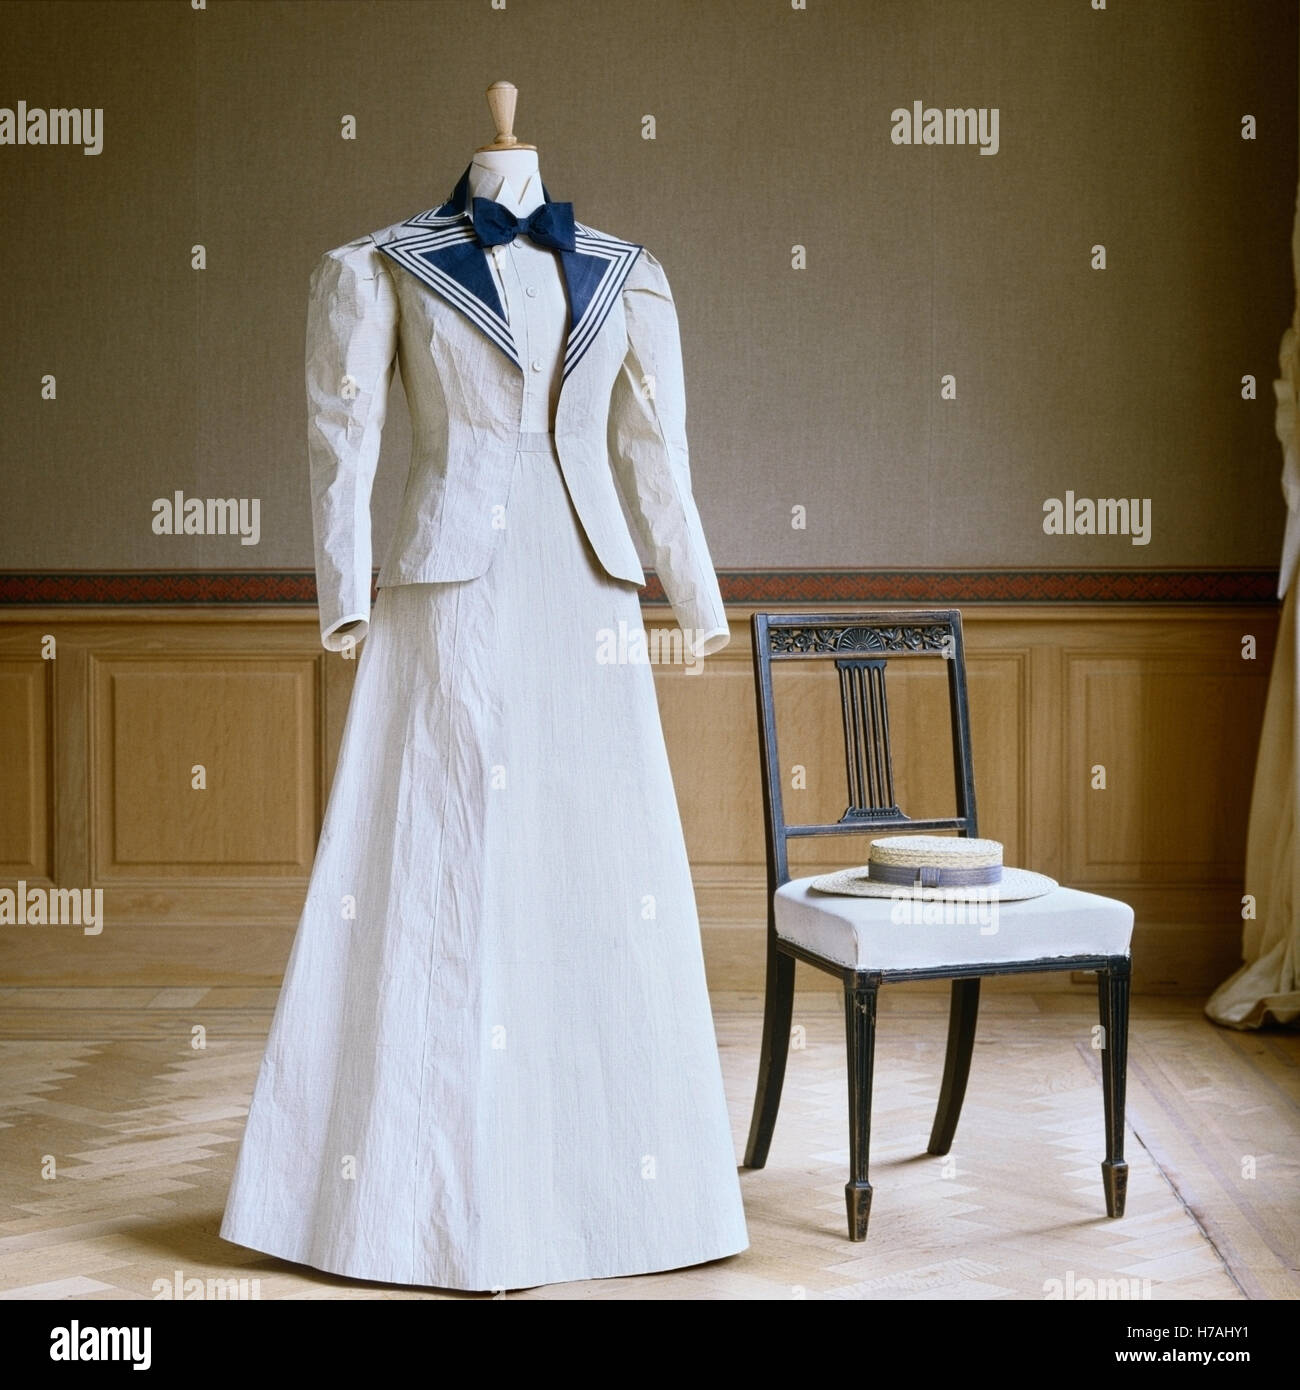 Blu e bianco in stile nautico gonna e giacca con paglia navigante, replica storica fatta di carta, Isabelle de Borchgrave Foto Stock